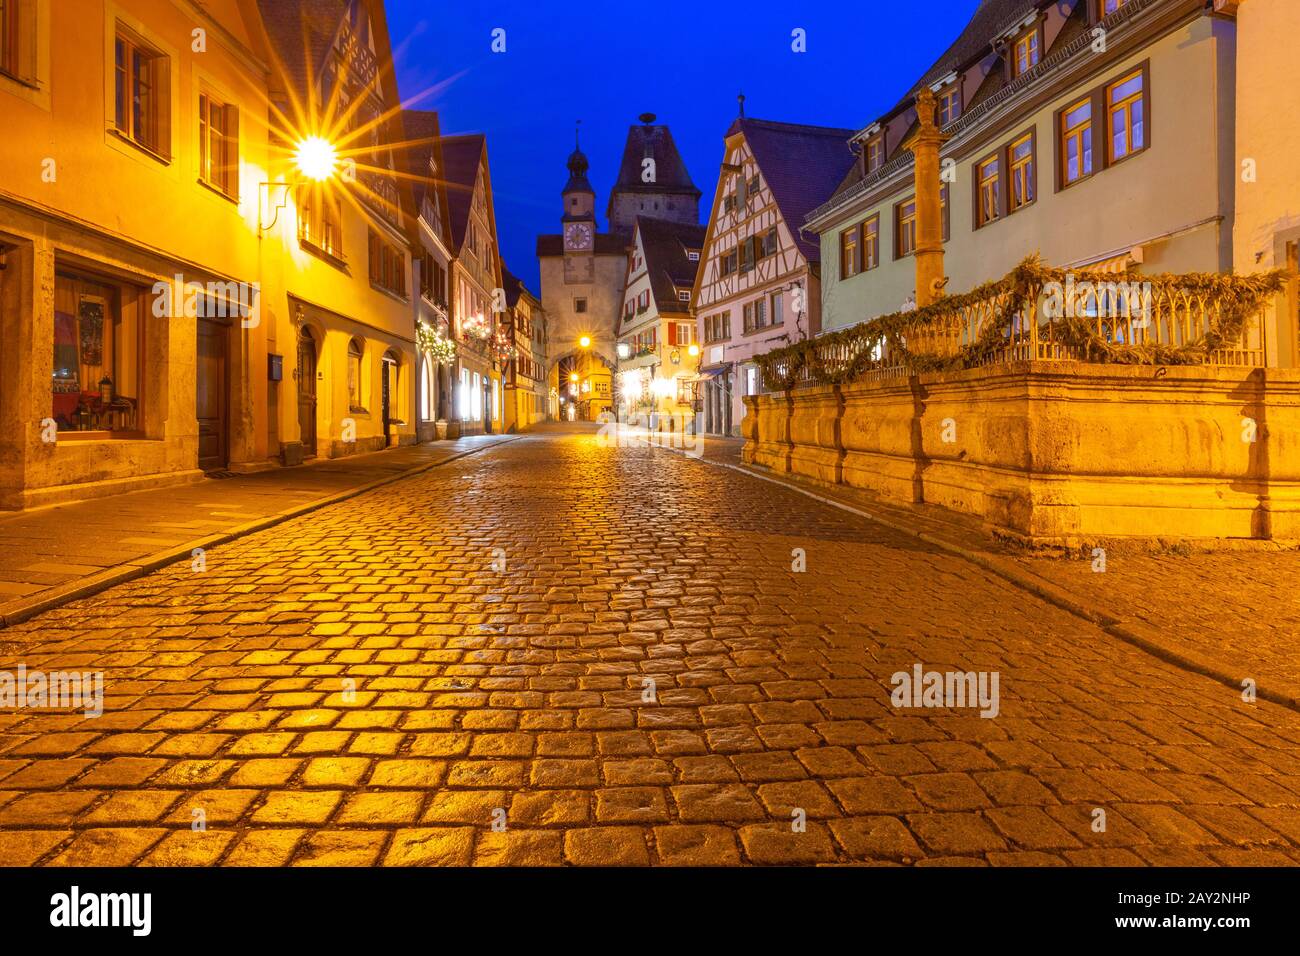 Calle nocturna con puerta y torre Markusturm en el casco antiguo medieval de Rothenburg ob der Tauber, Baviera, sur de Alemania Foto de stock